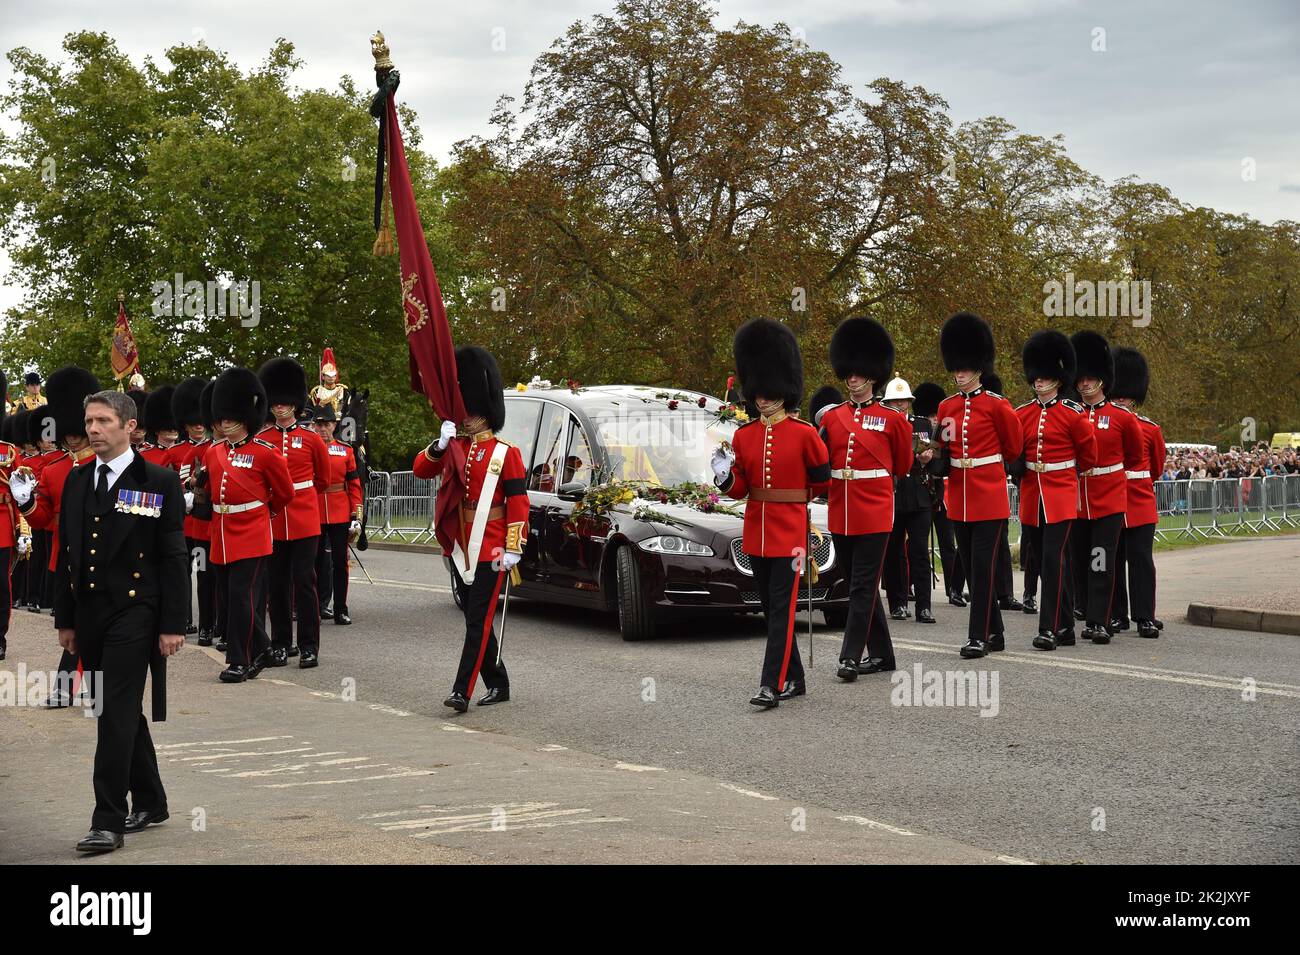 Funeral of Queen Elizabeth II Windsor Monday 19th September 2022 Stock Photo